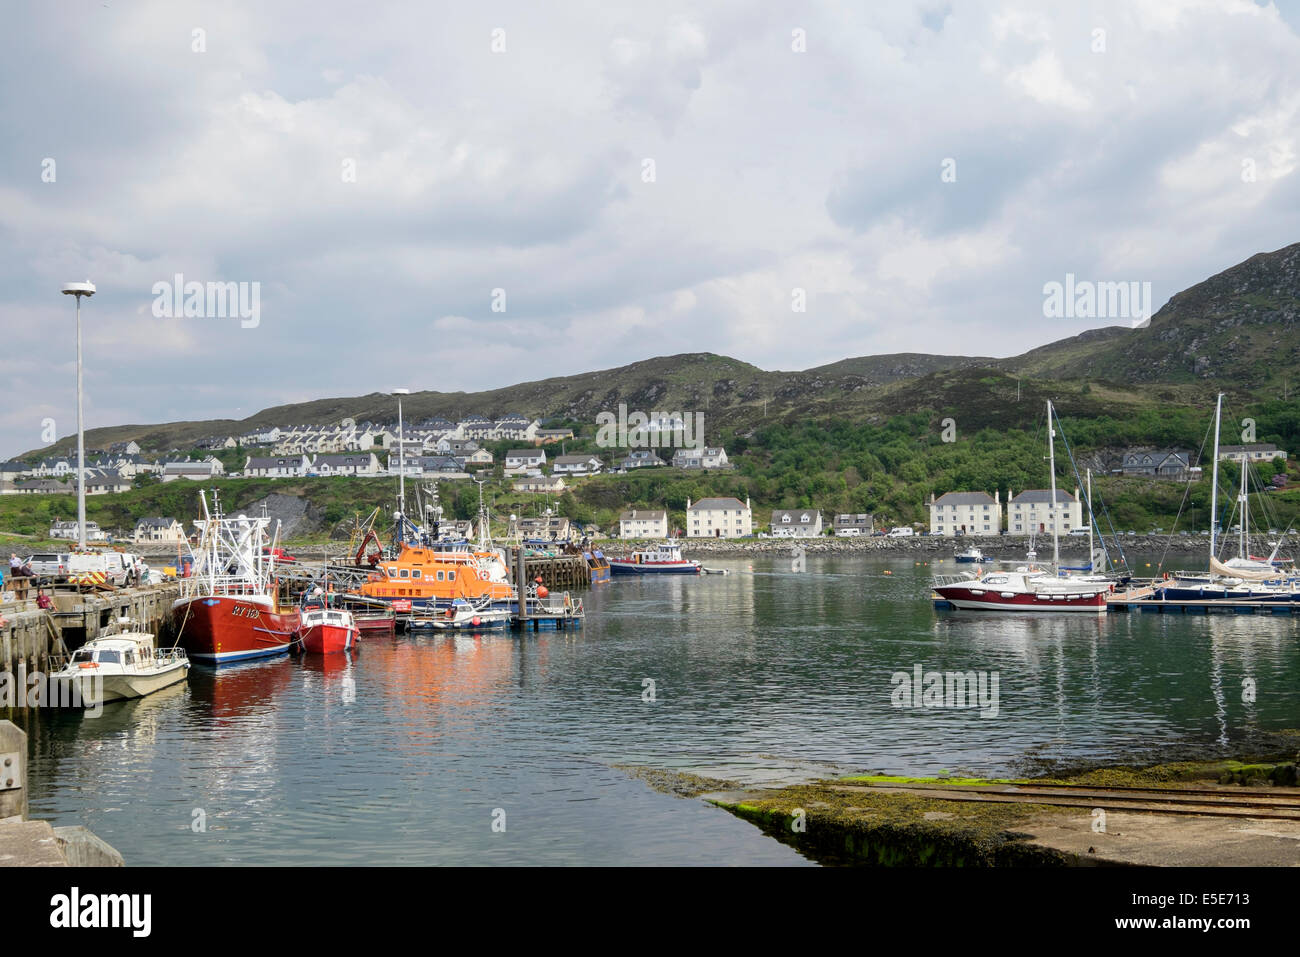 Barche e RNLI scialuppa di salvataggio ormeggiati in porto a Scottish west coast. Mallaig, Highland, Scozia, Regno Unito, Gran Bretagna Foto Stock